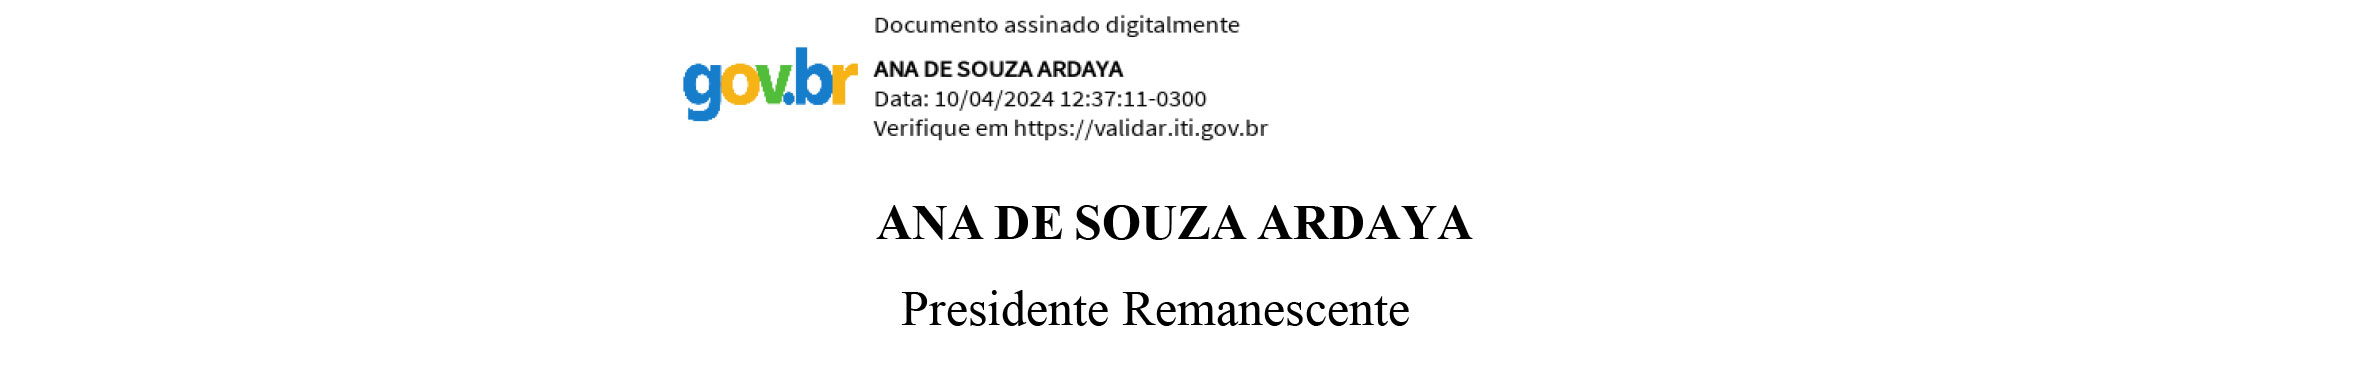 COMUNICADO: DISSOLUÇÃO E EXTINÇÃO - ASSOCIACAO DE MORADORES DO RESIDENCIAL VIENA I – ASMORV - News Rondônia